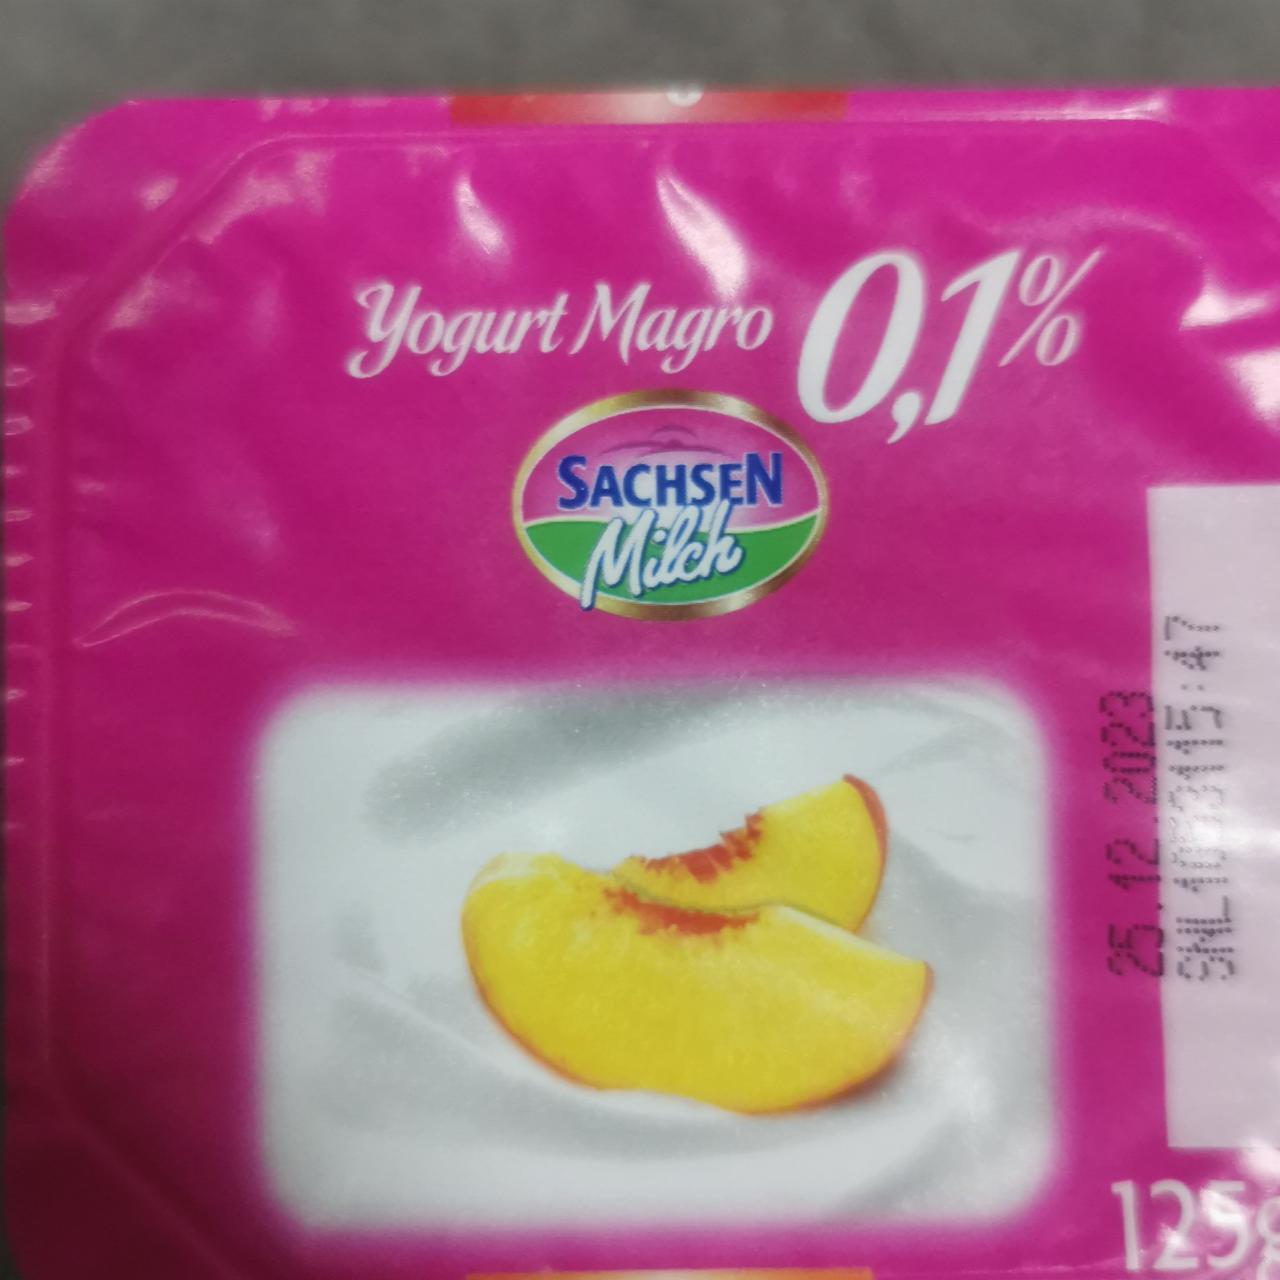 Fotografie - Yogurt Magro 0,1% Sachsen Milch